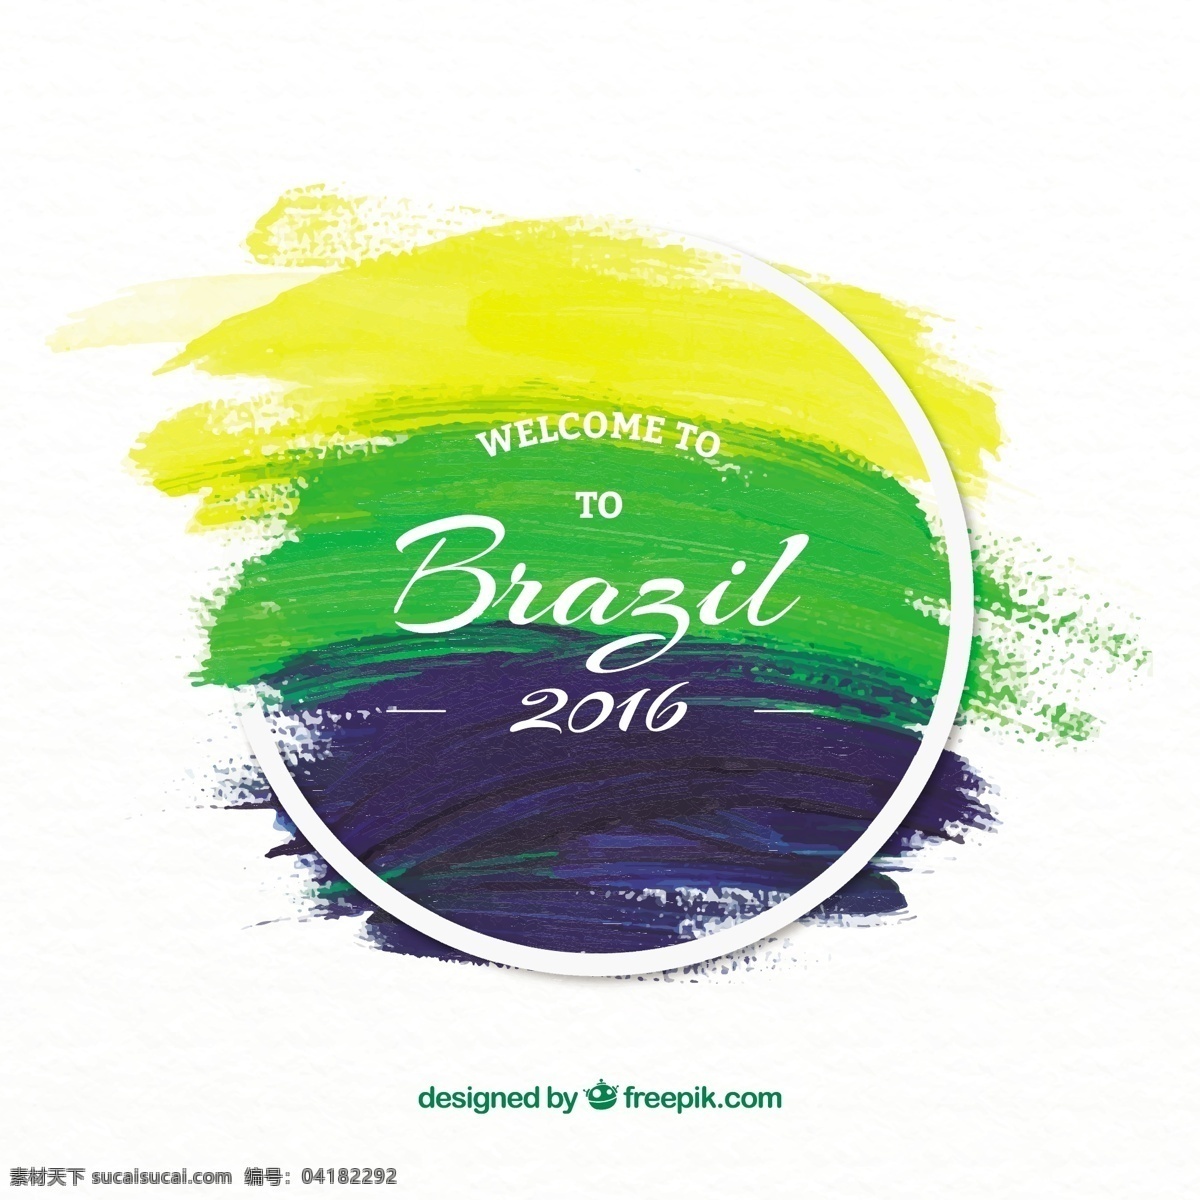 巴西 奥运会 2016 毛笔 笔刷 背景 矢量图 奥林匹克 笔画 培训 水彩画 运动项目 涂料刷 2016健康 白色